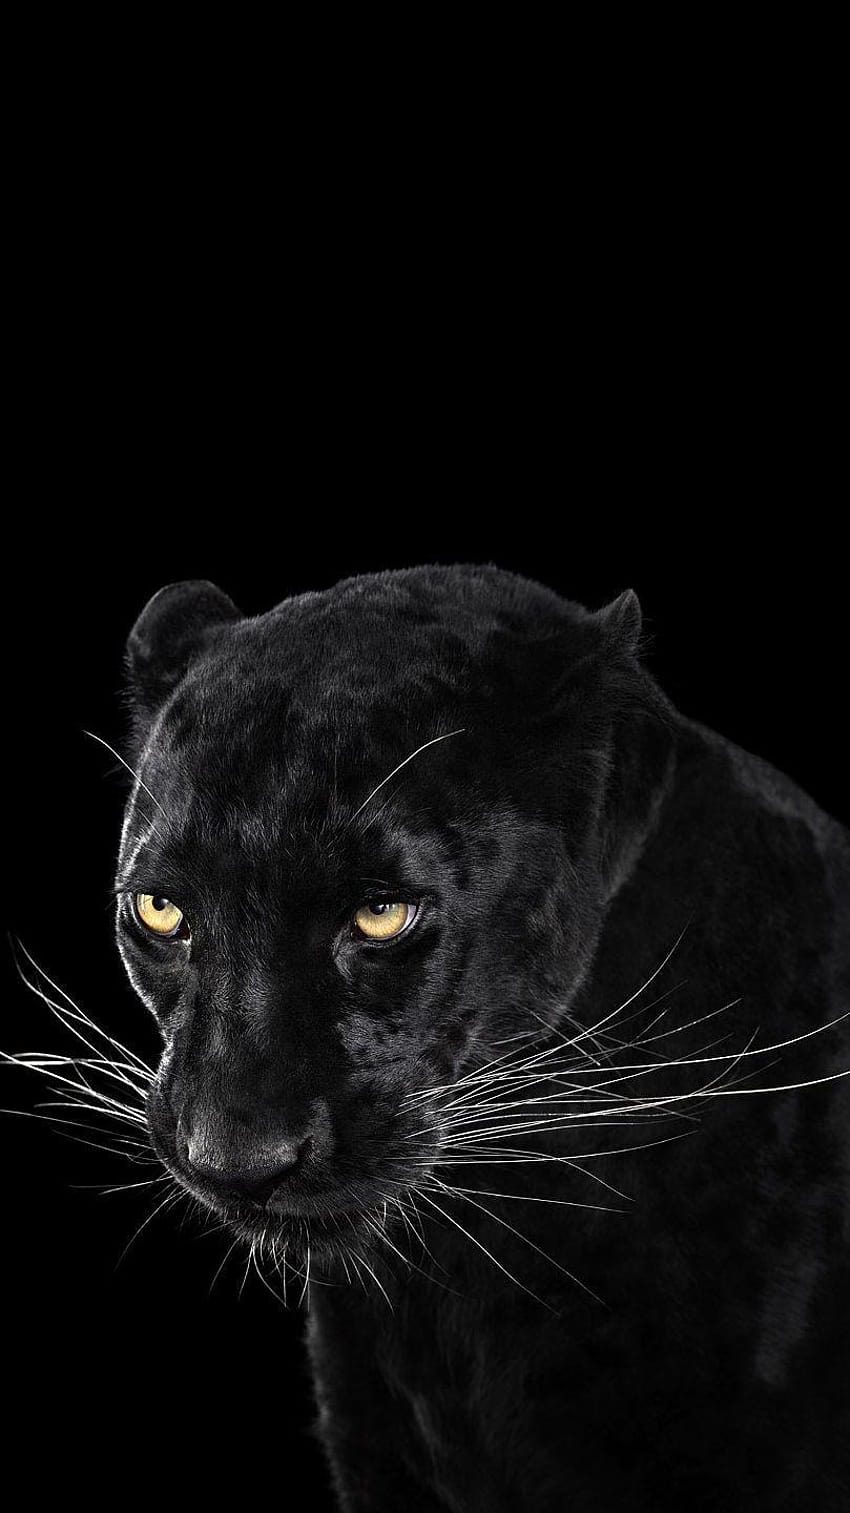 Black Jaguar Animal Iphone HD phone wallpaper | Pxfuel